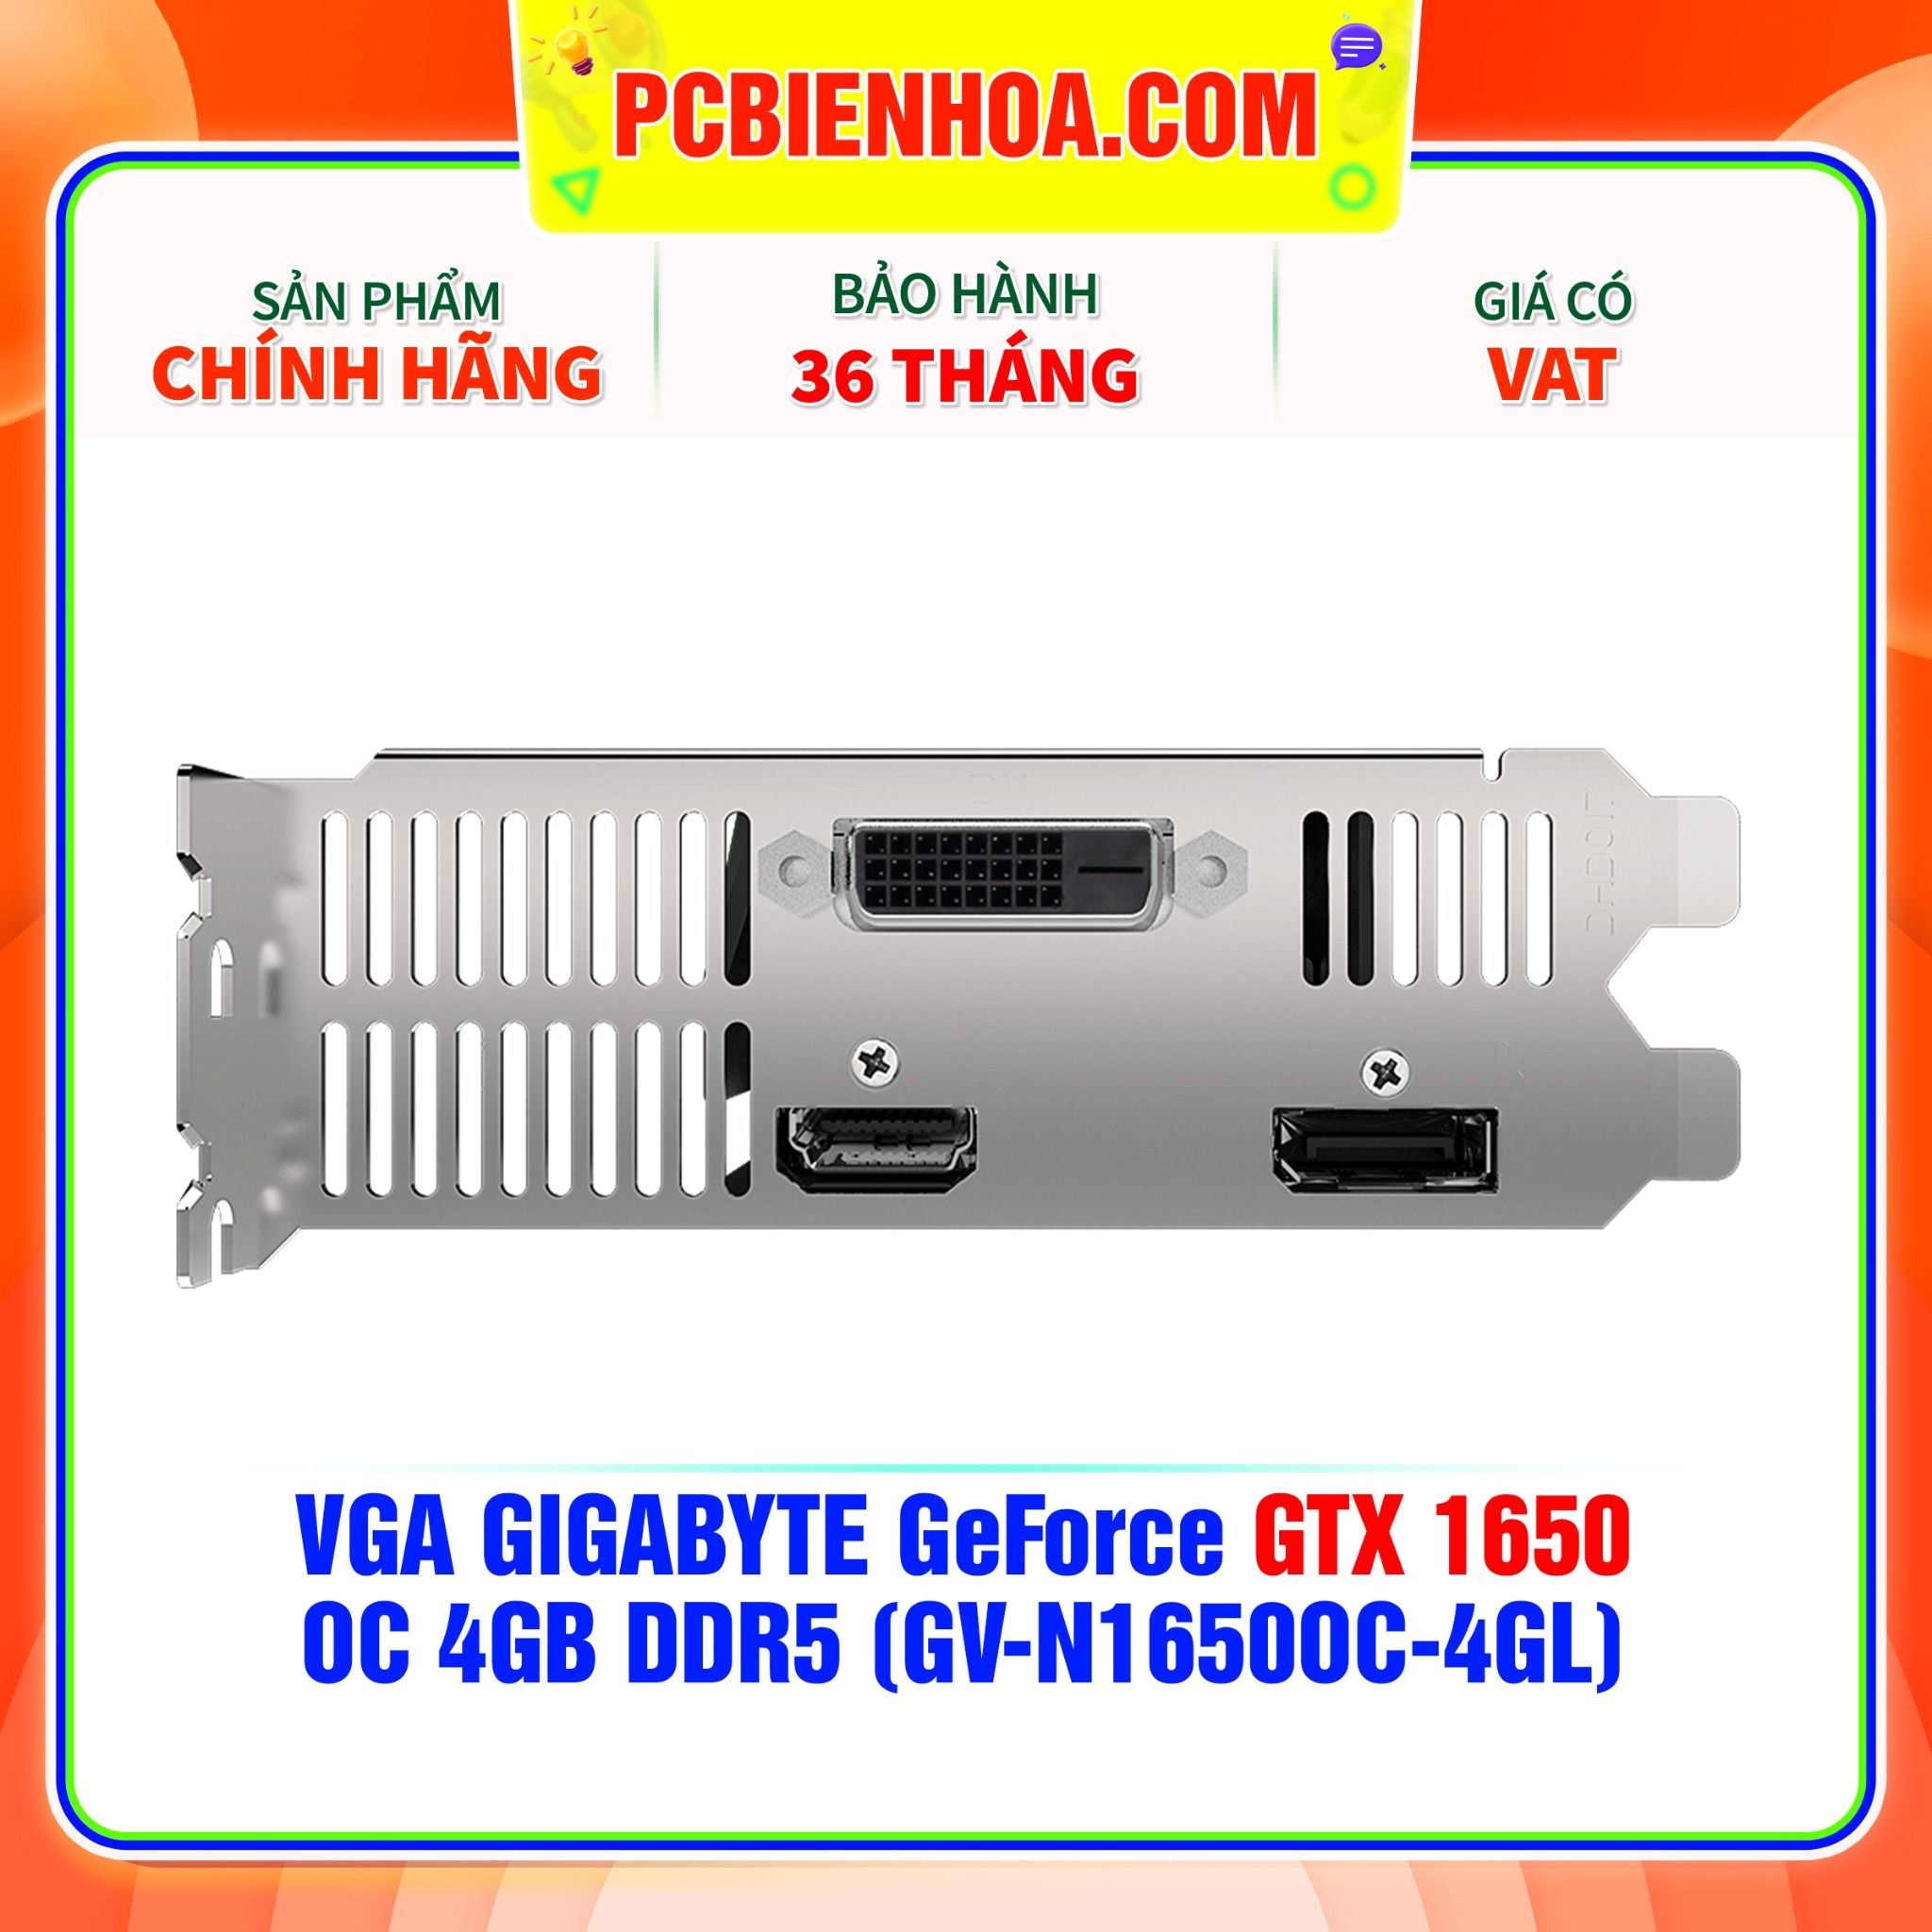  VGA GIGABYTE GeForce GTX 1650 OC 4GB DDR5 (GV-N1650OC-4GL) 